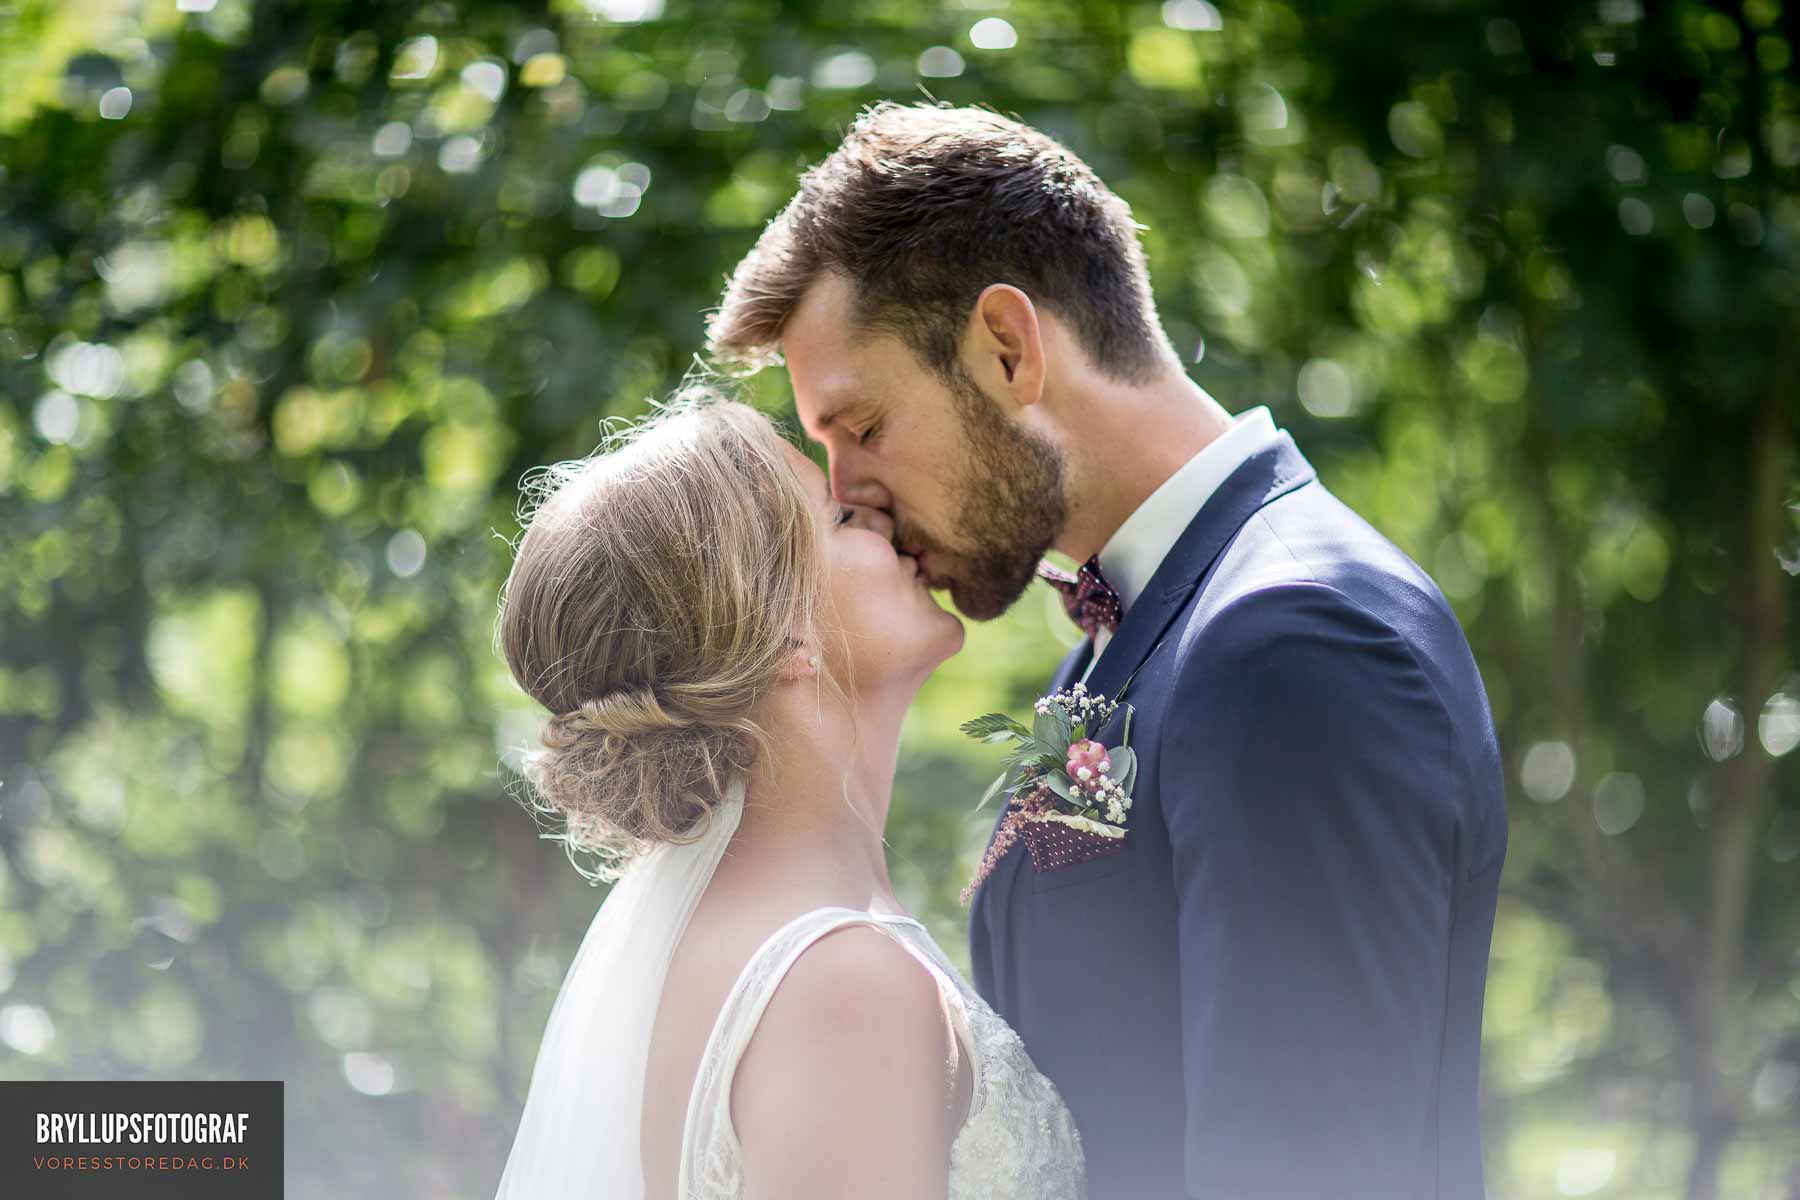 Fantastisk dygtig og professionel fotograf med fokus på bryllup